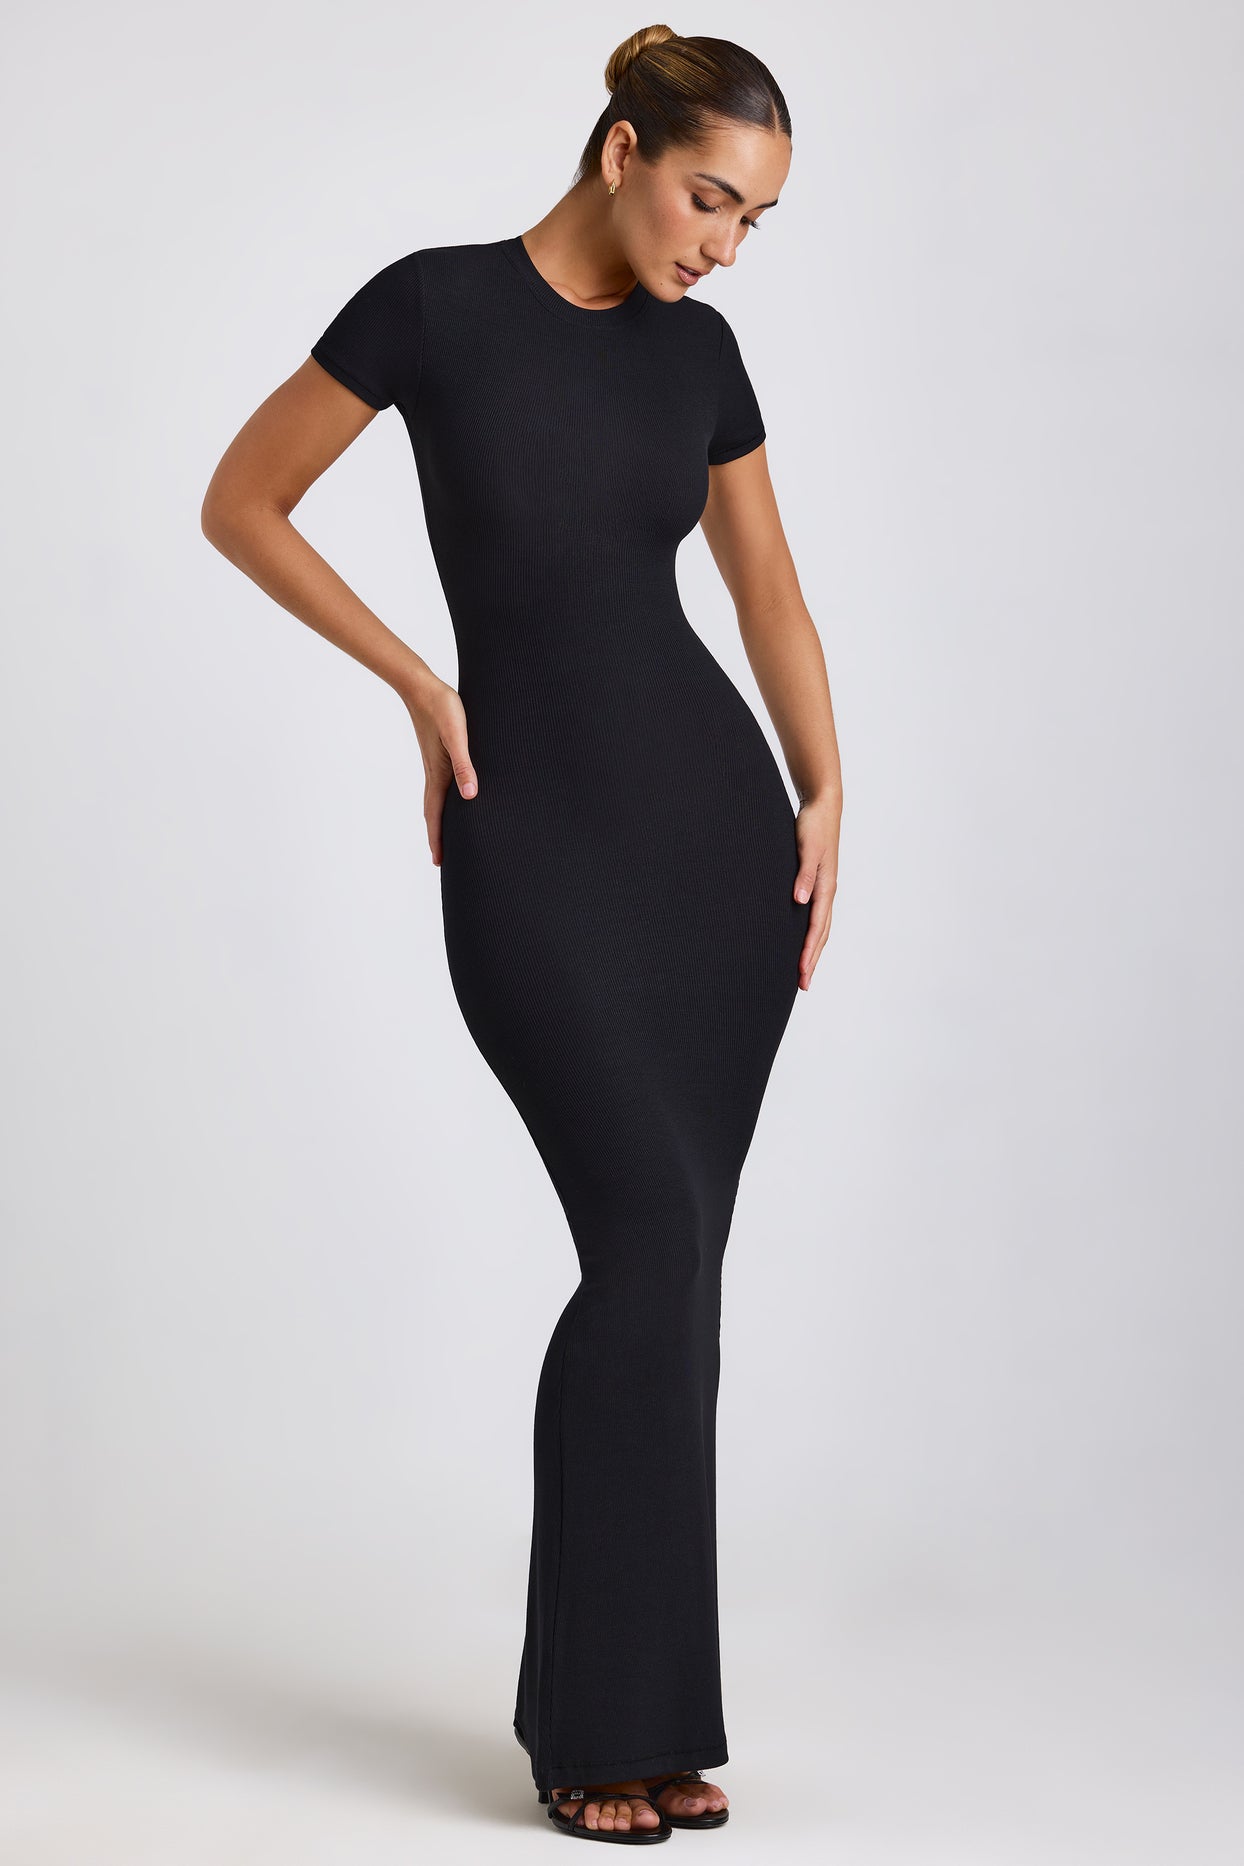 Prążkowana modalna sukienka maxi w kolorze czarnym